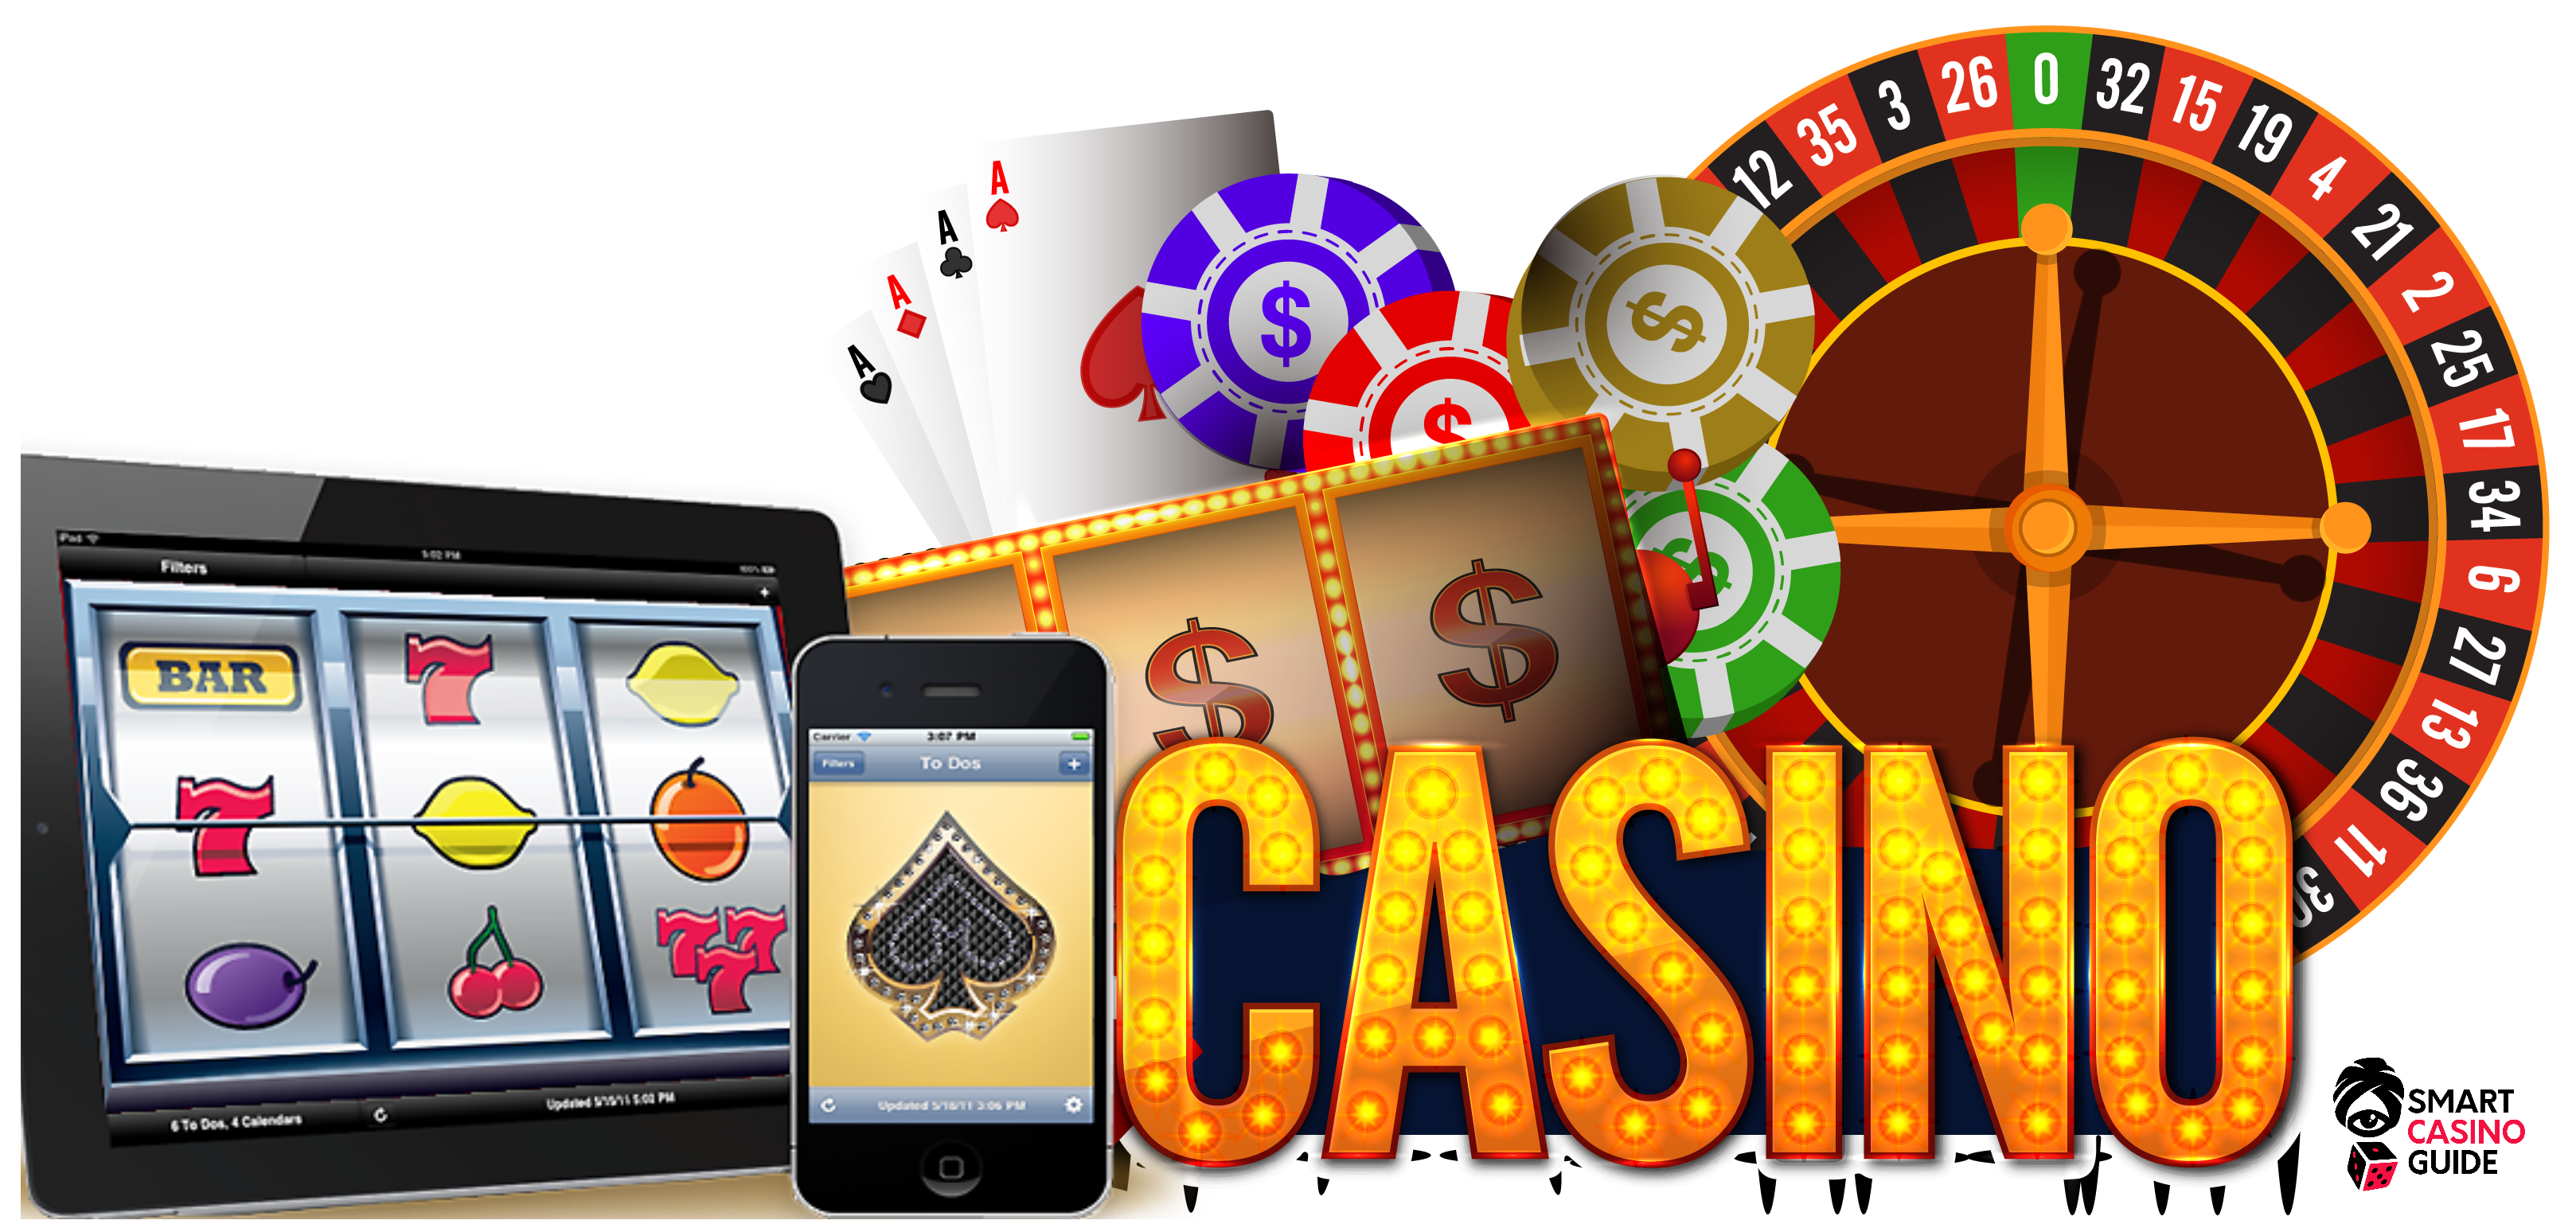 Mobile Phone Casino Games Gambling Online